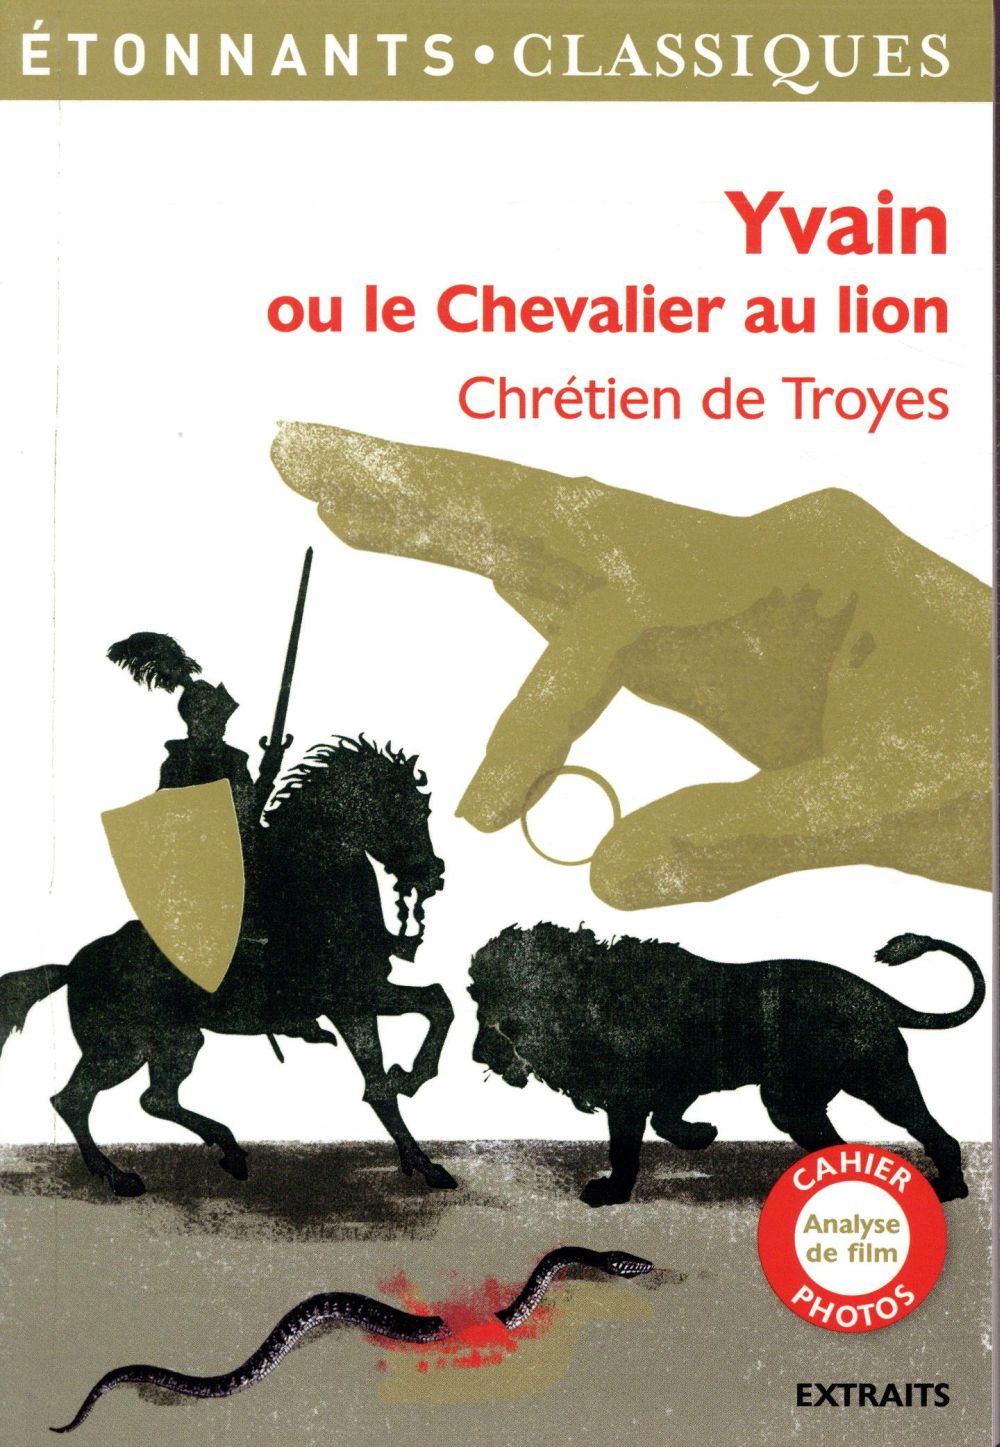 Yvain, le chevalier au lion : texte intégral de Chrétien de Troyes